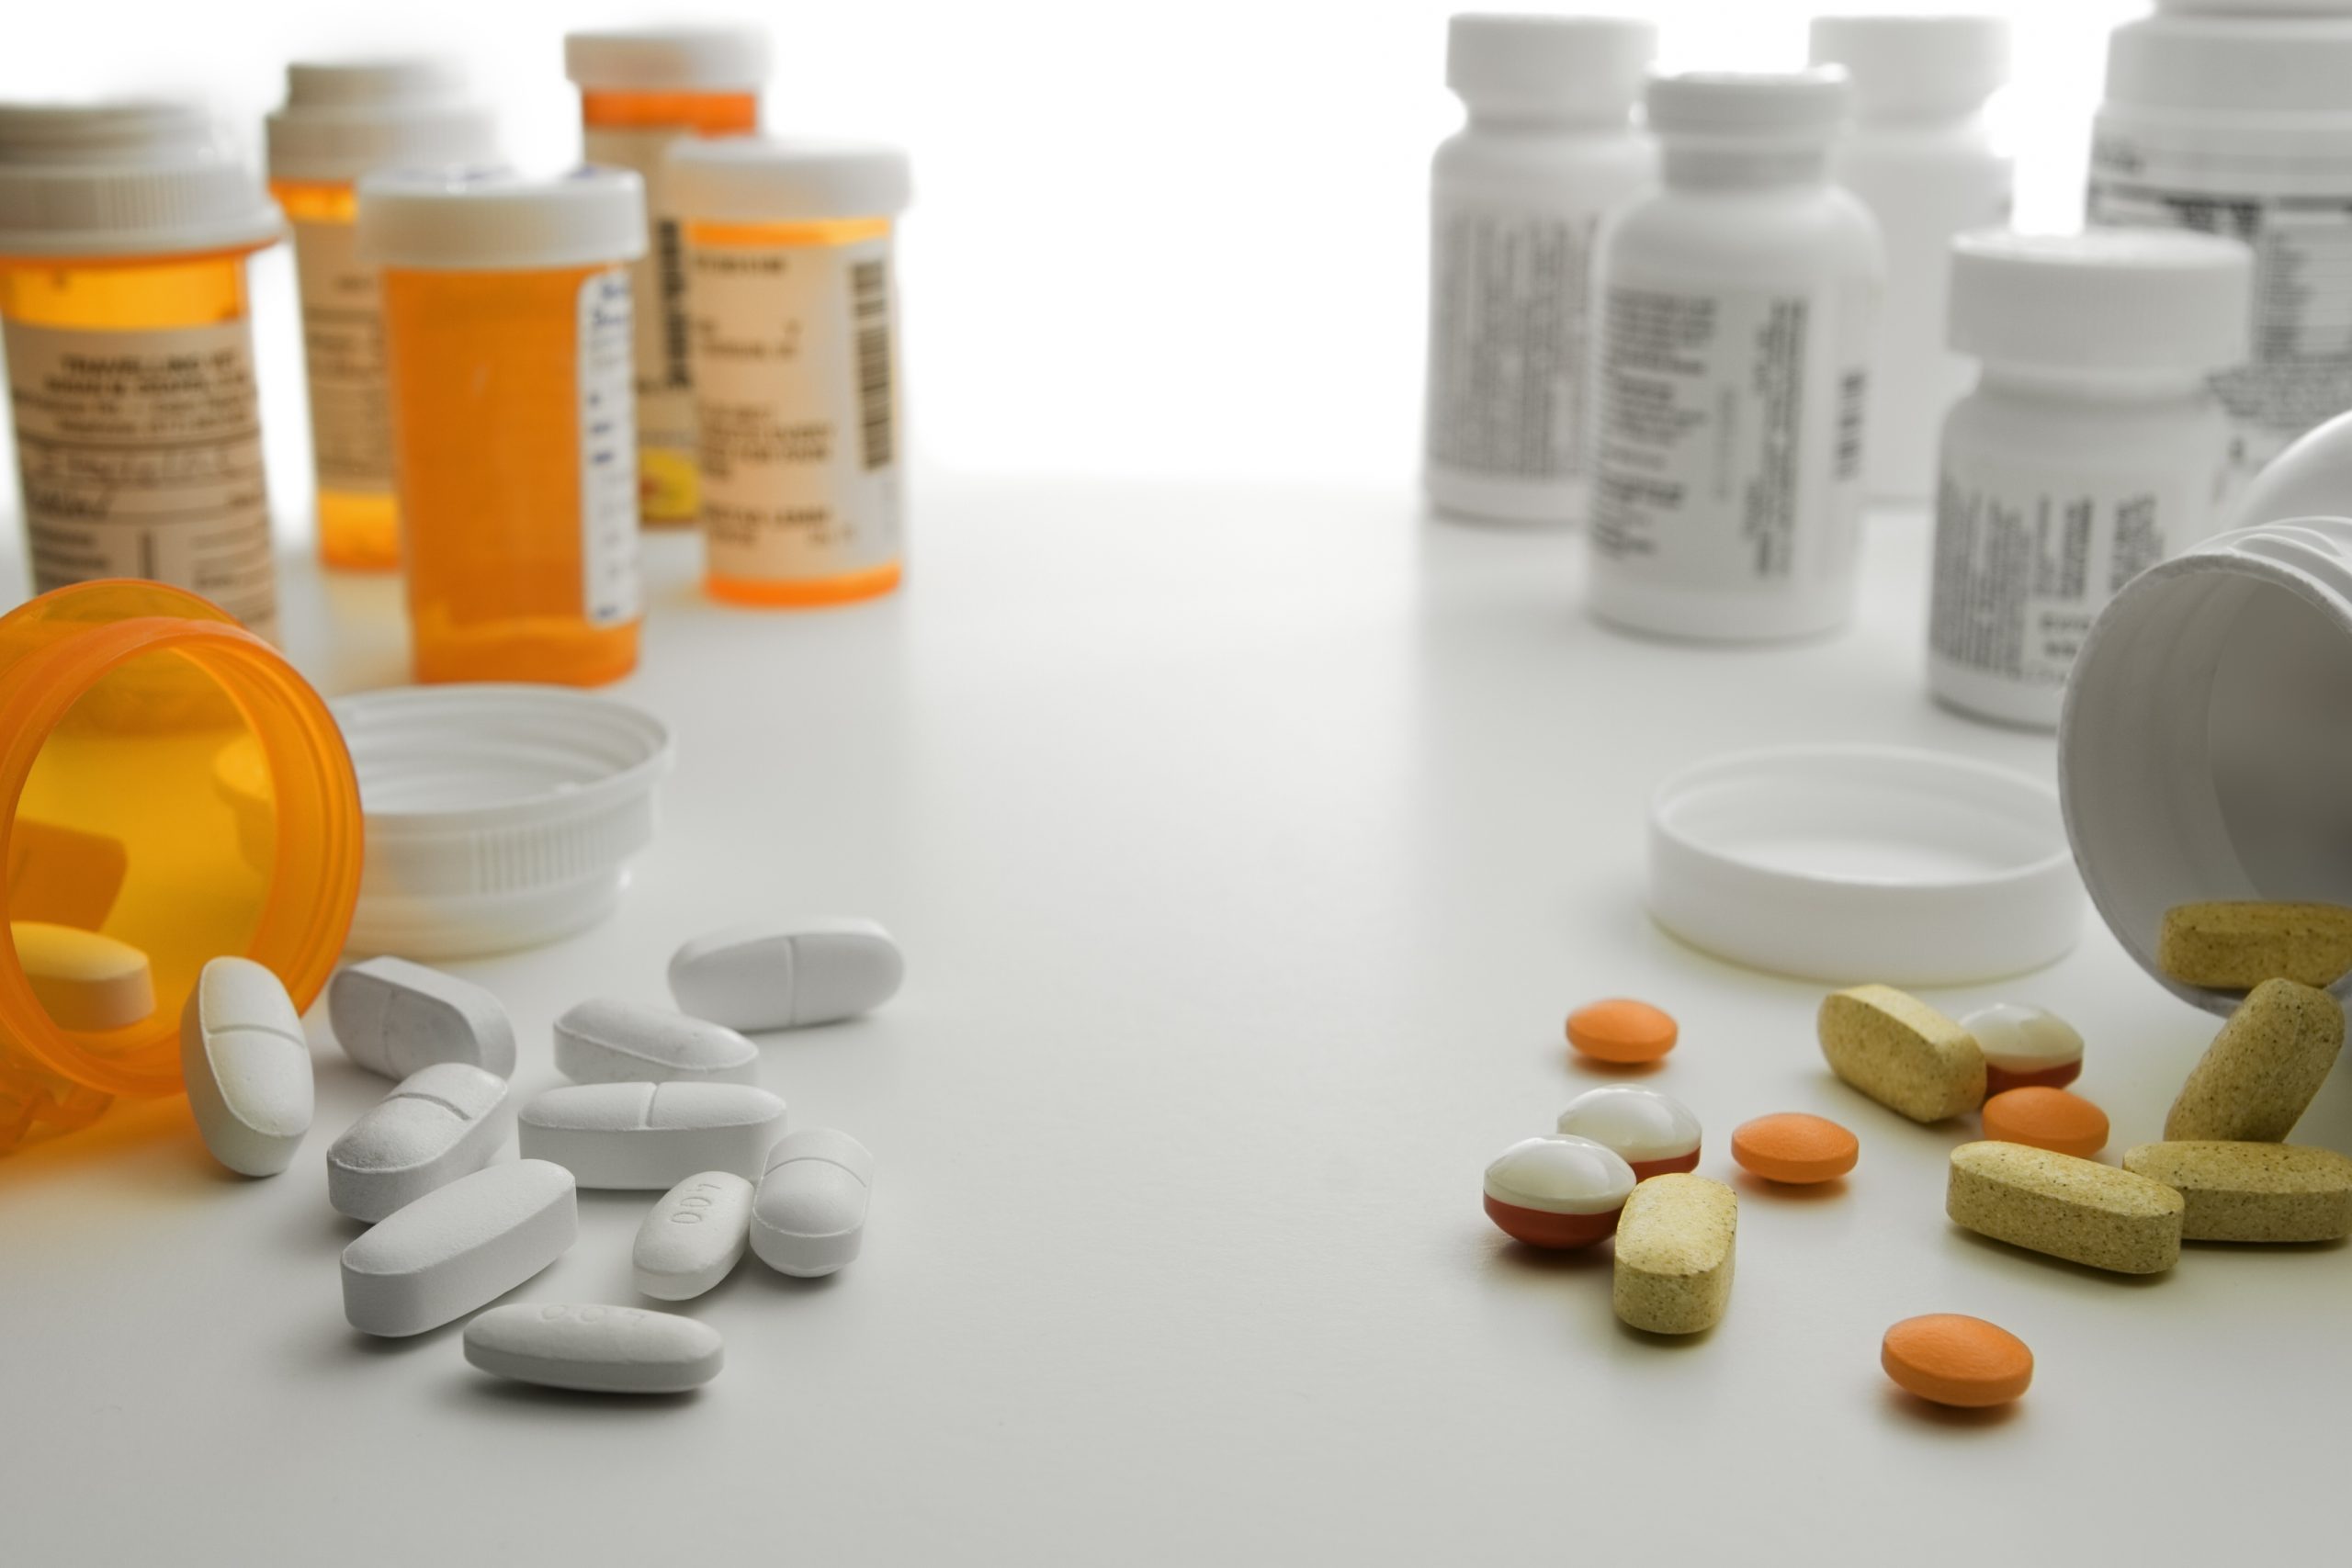 Foto de frascos de remédios nas cores laranja e branco, alguns abertos, com comprimidos, brancos e coloridos, espalhados numa mesa branca.